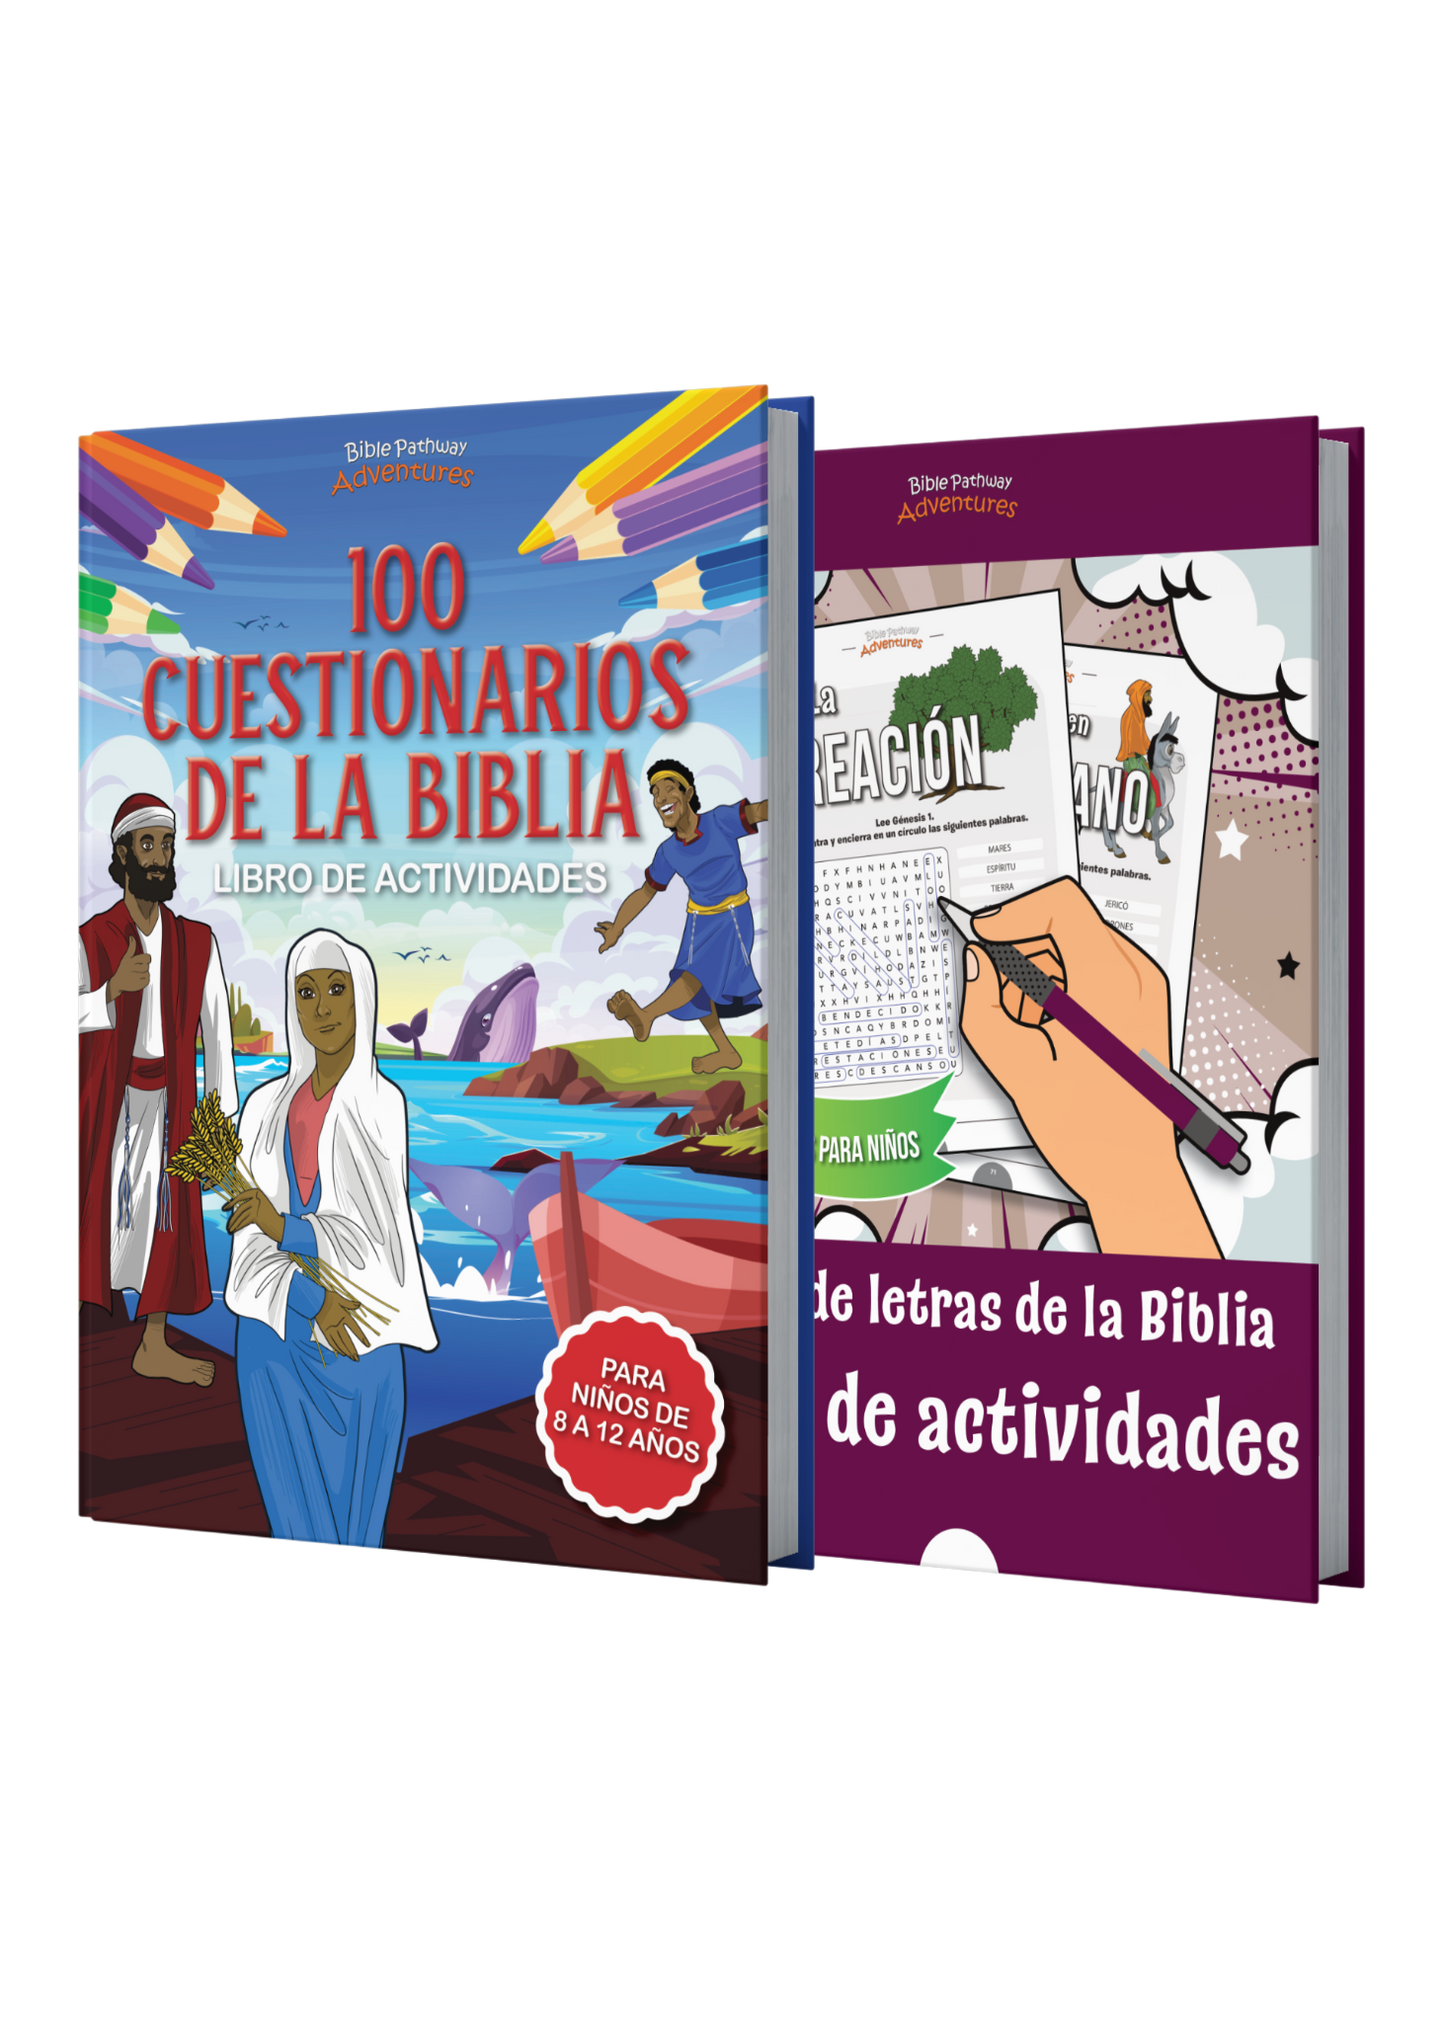 BUNDLE: Cuestionarios bíblicos y sopas de letras: Libros de actividades